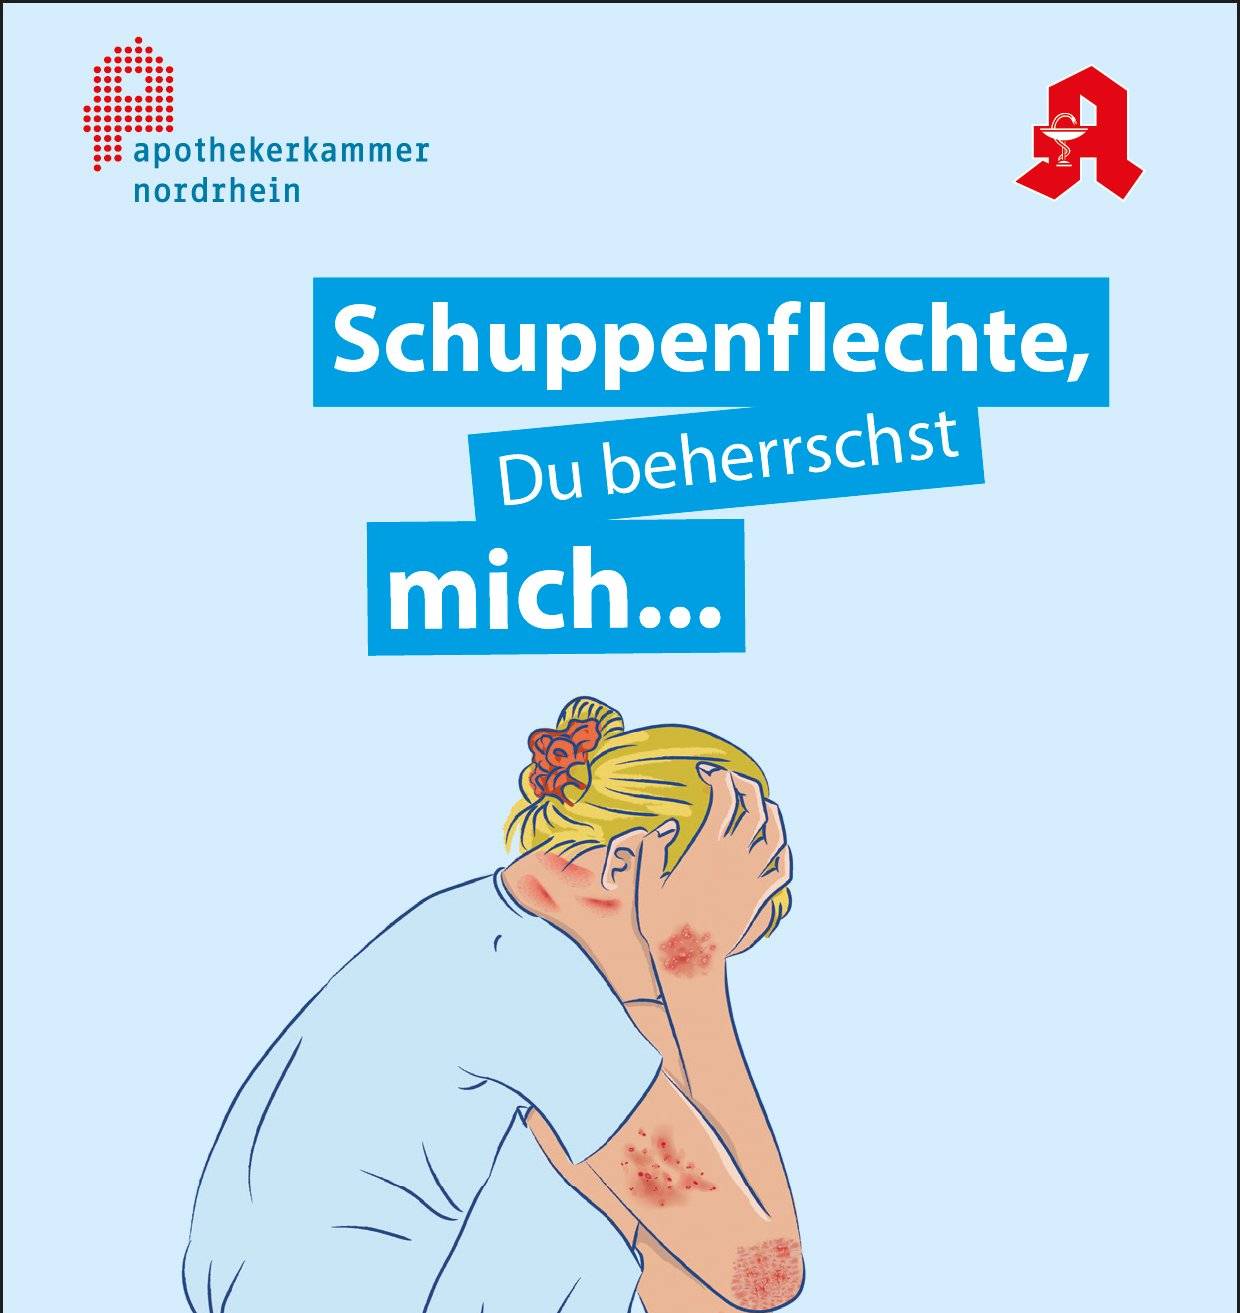  Leitmotiv der aktuellen Schuppenflechte-Kampagne der Apothekerkammer Nordrhein. 